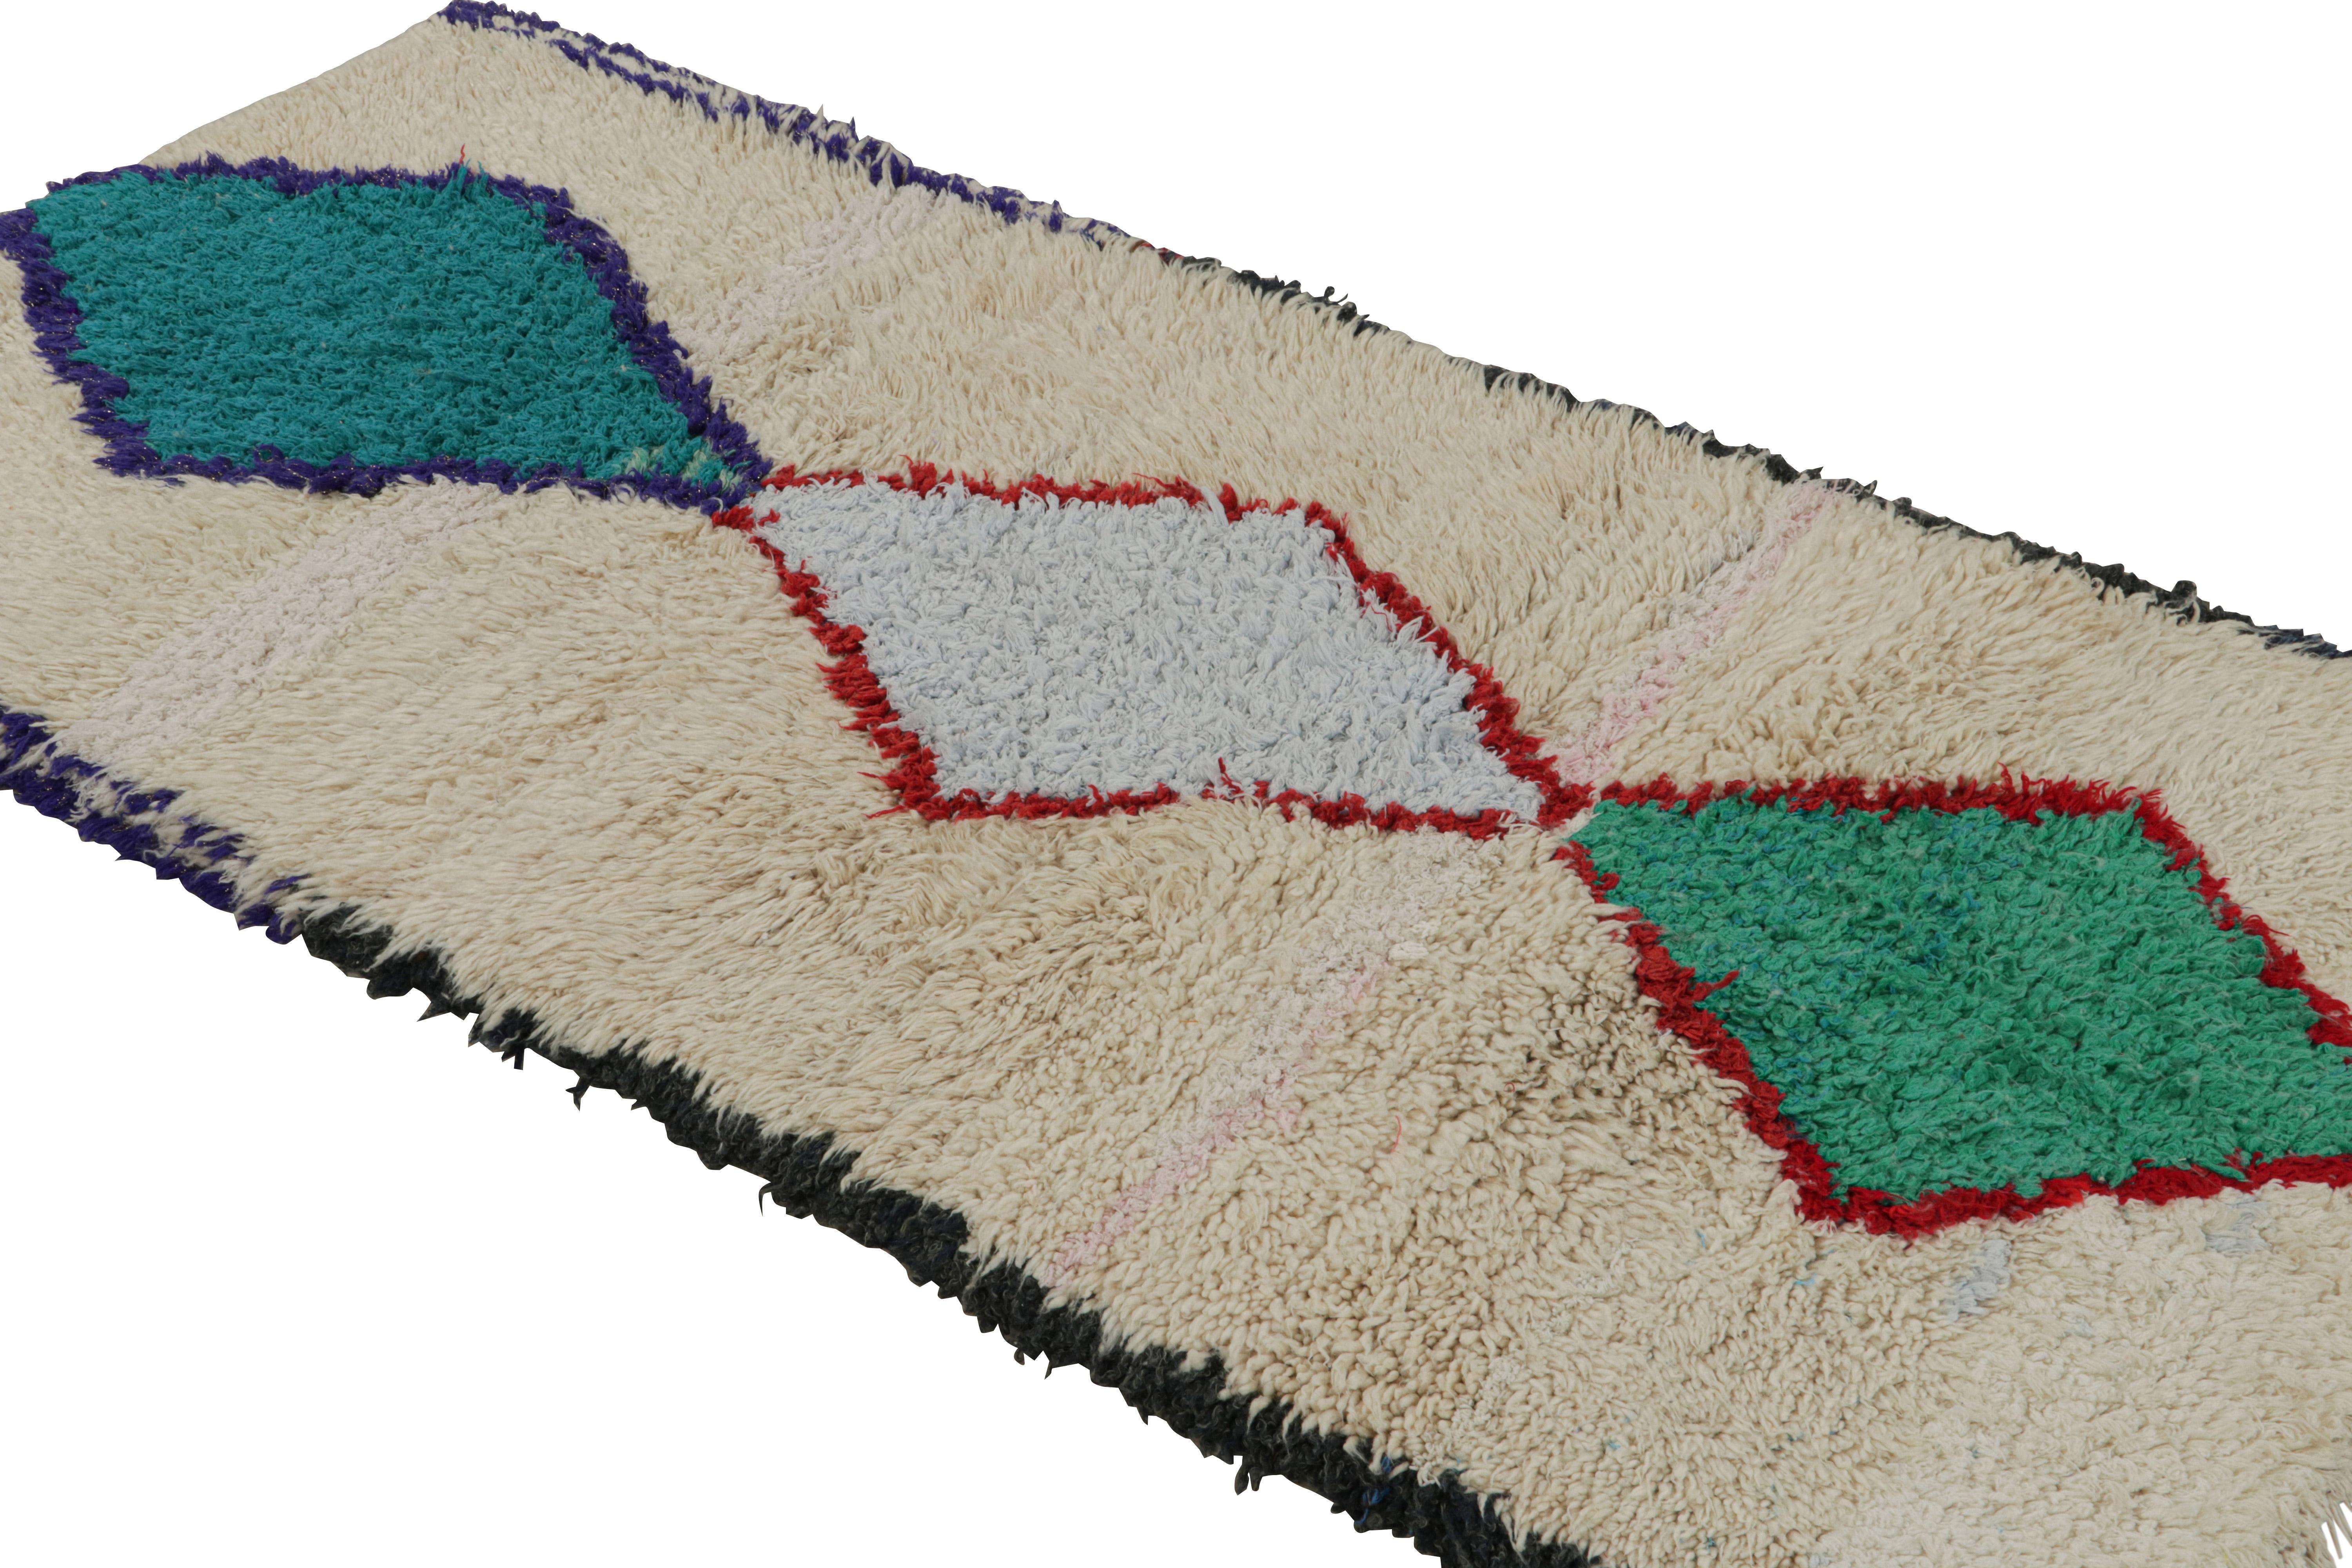 Noué à la main en laine et en coton vers 1950-1960, ce tapis de course marocain vintage 3x6 proviendrait de la tribu Azilal. 

Sur le Design : 

Ce chemin de table présente des motifs en losange bleu-rouge et vert sur un fond beige. Les yeux